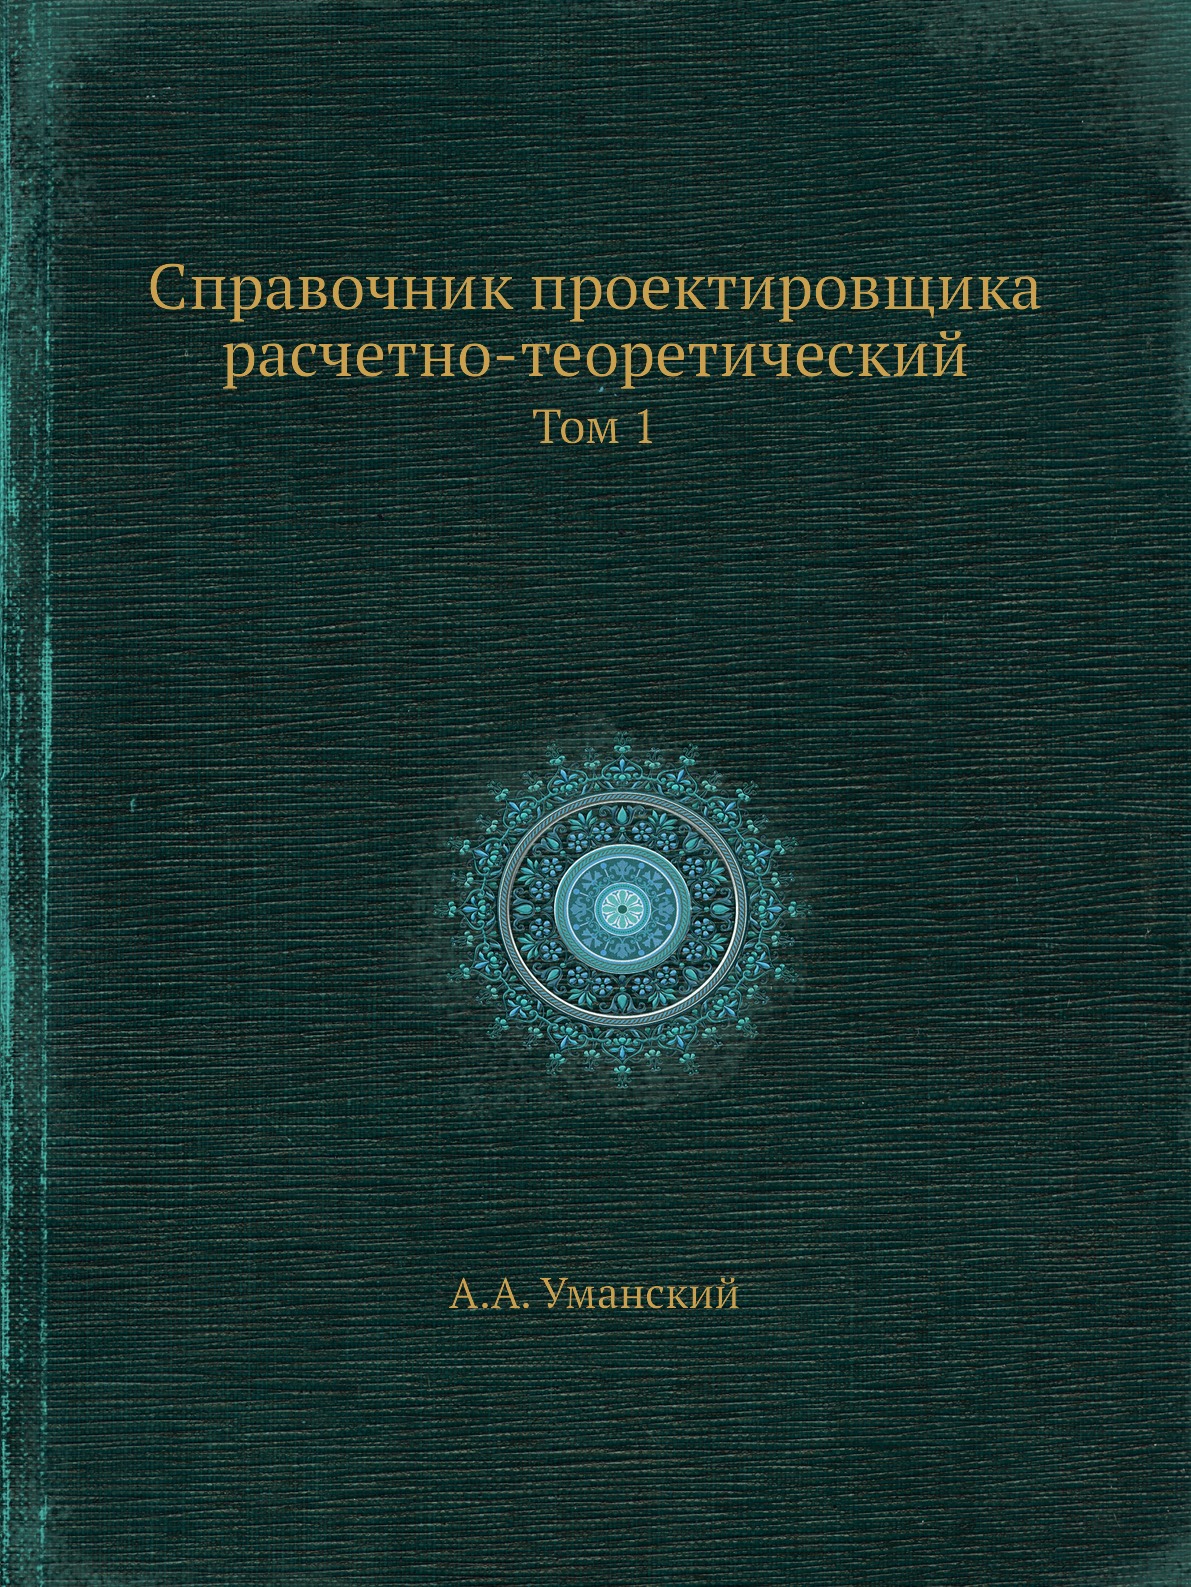 Книга Справочник проектировщика расчетно-теоретический. Том 1